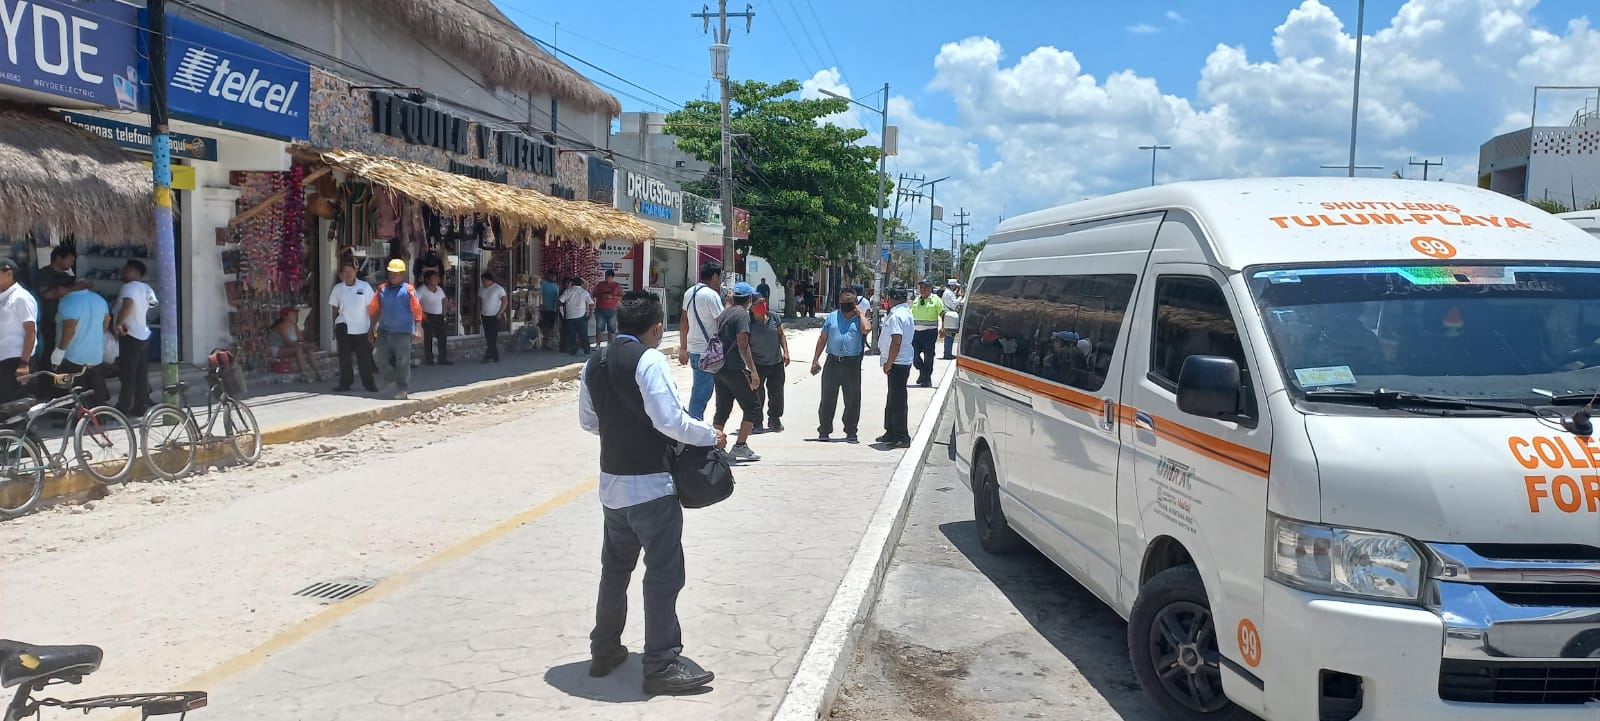 Aumento de vans foráneas genera conflicto sindical en la ruta Tulum-Playa del Carmen